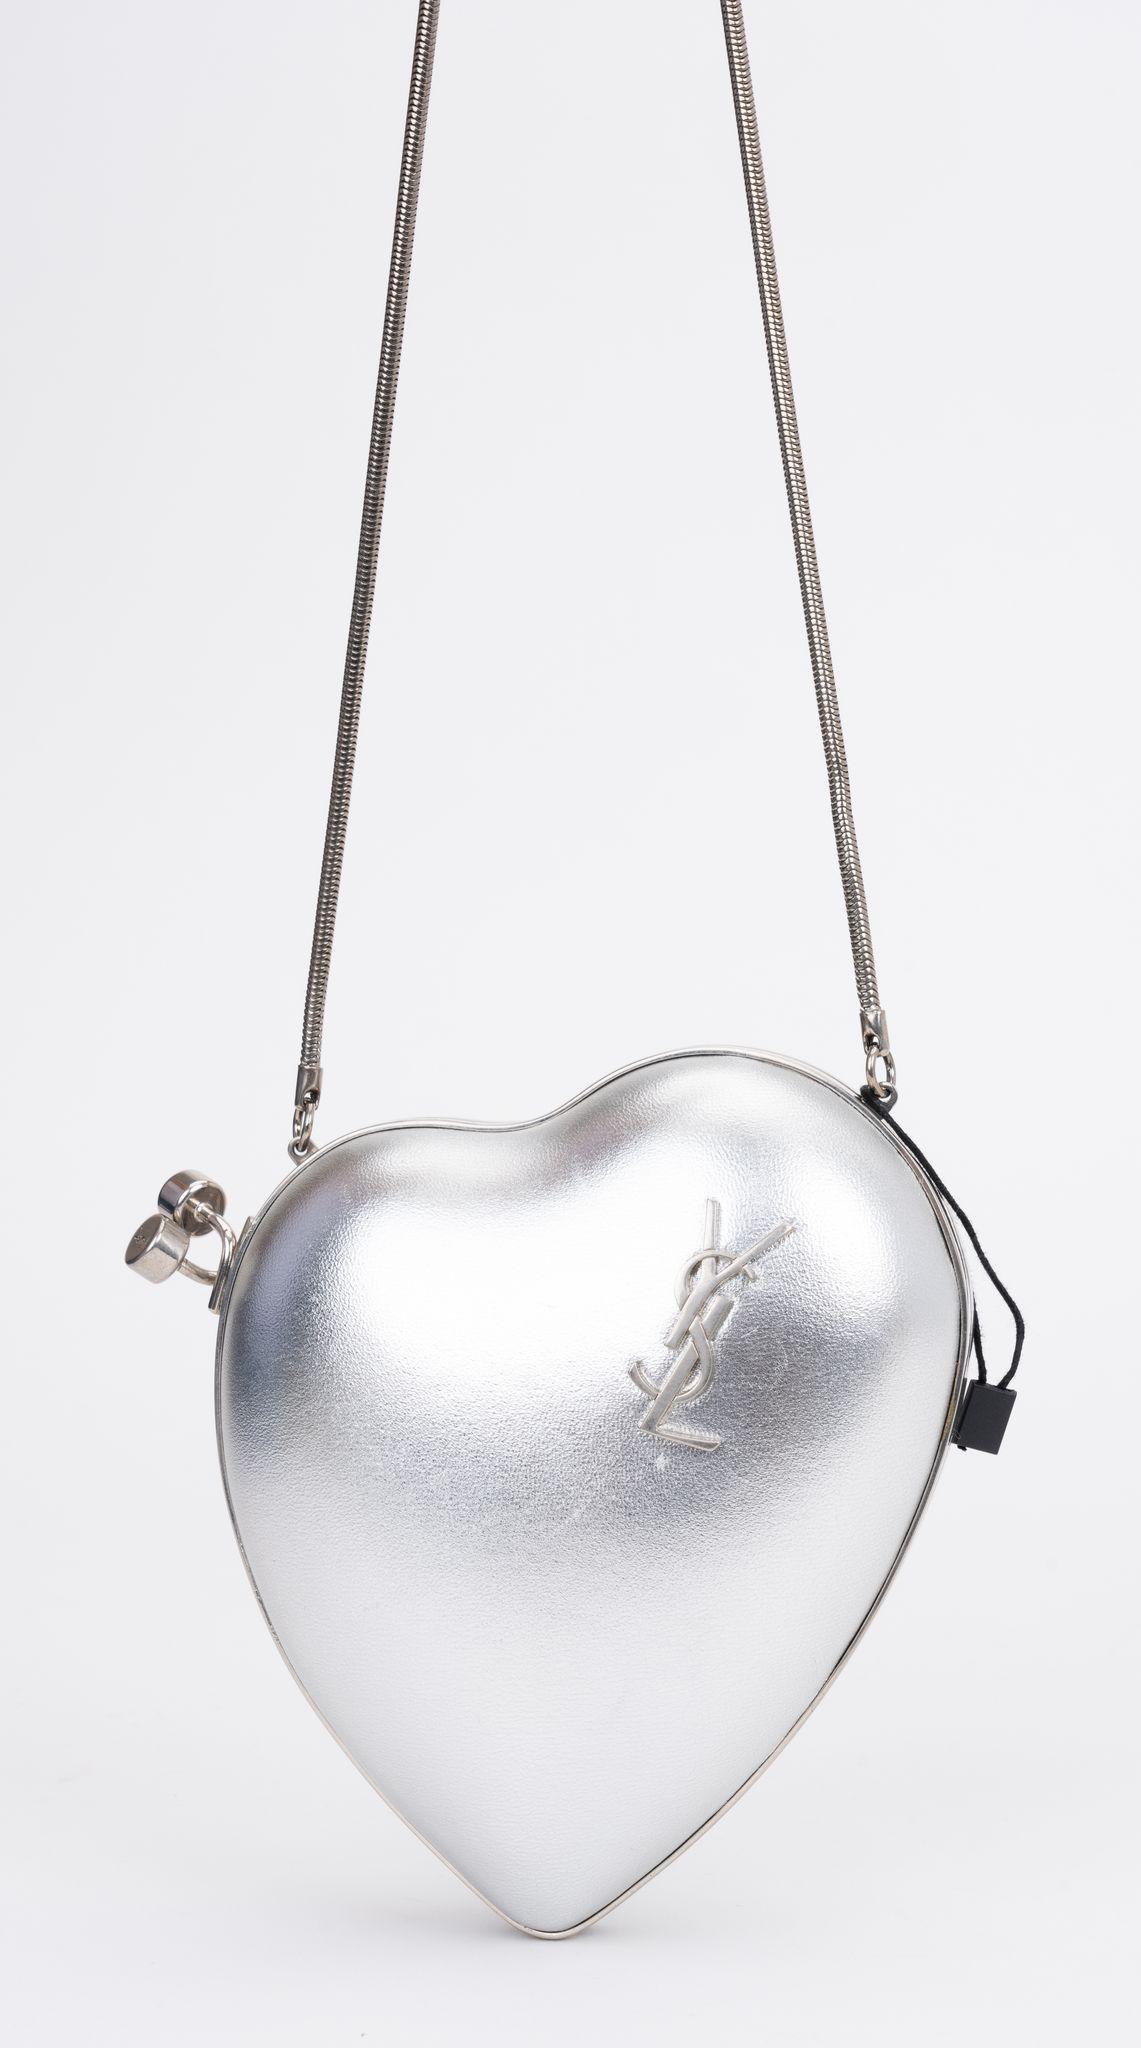 YSL brandneue silberne Leder-Abendtasche in Herzform. Harter Silberrahmen und Schlangenkettenband. Schulterhöhe 21